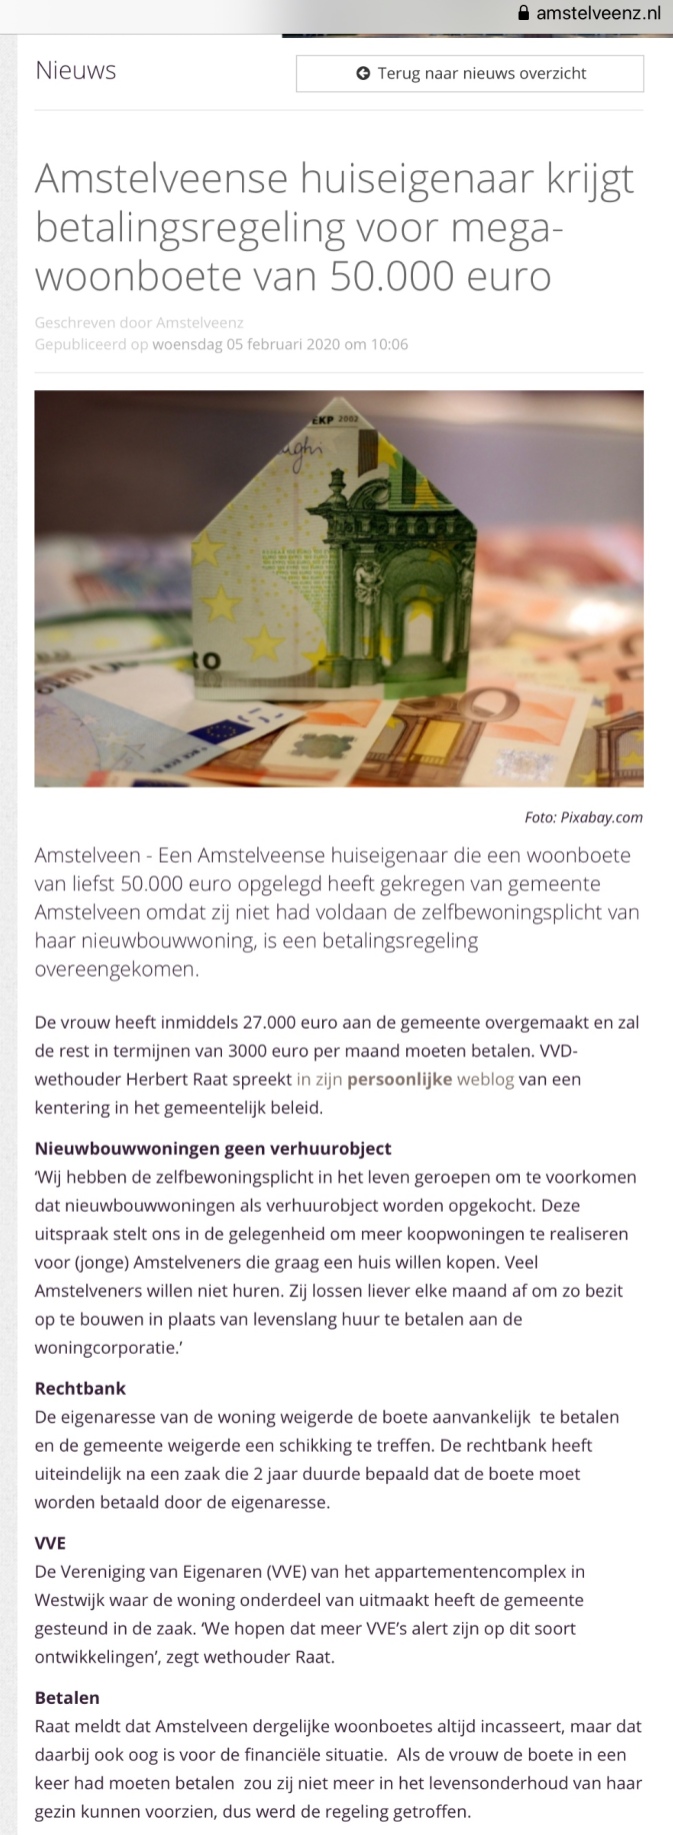 2020-5-2-AmstelveenZ: Herbert Raat over handhaving Zelfbewoningsplicht